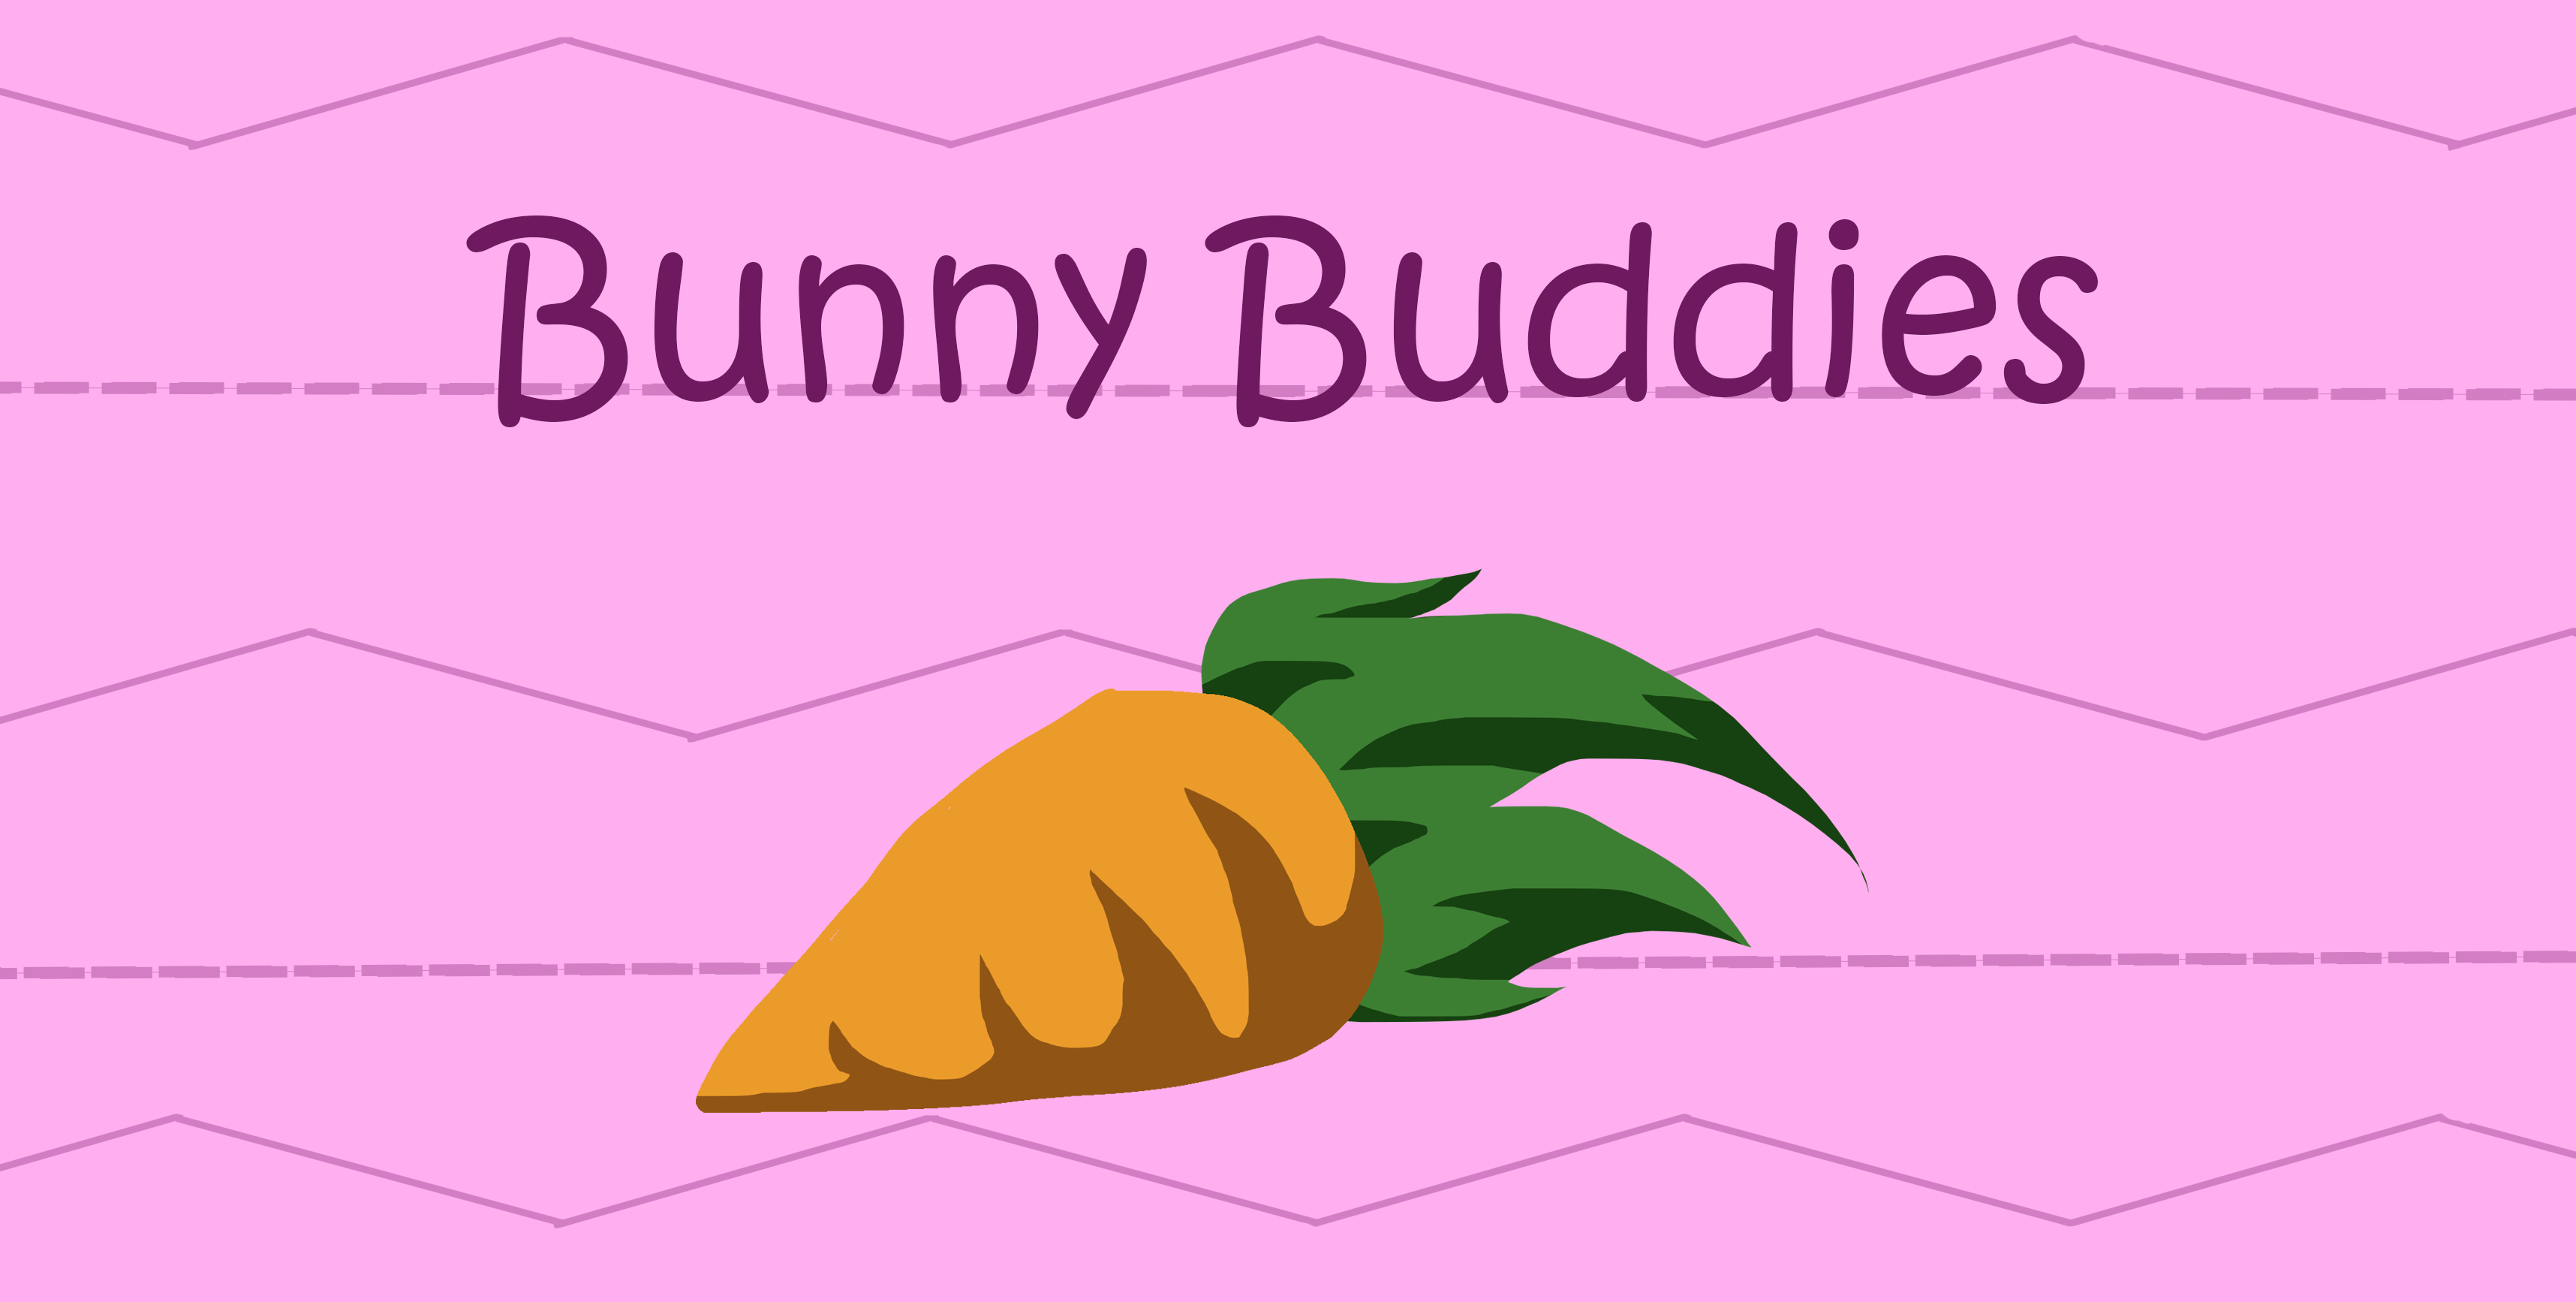 Bunny Buddies